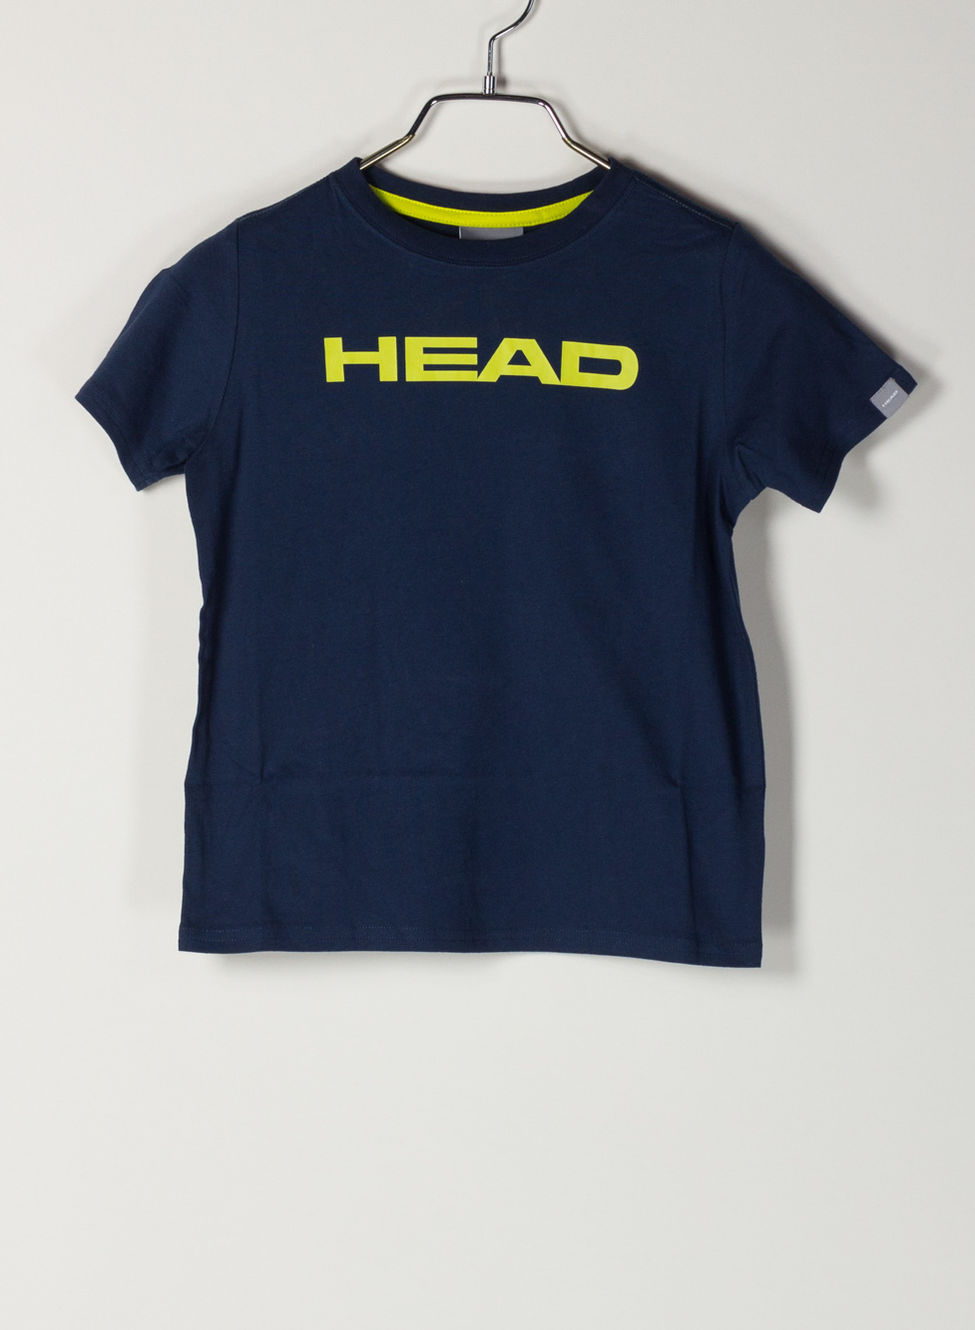 Maglietta da Bambino Taglia M Colore: Blu Reale Visita lo Store di HeadHead Club Ivan Jnr 